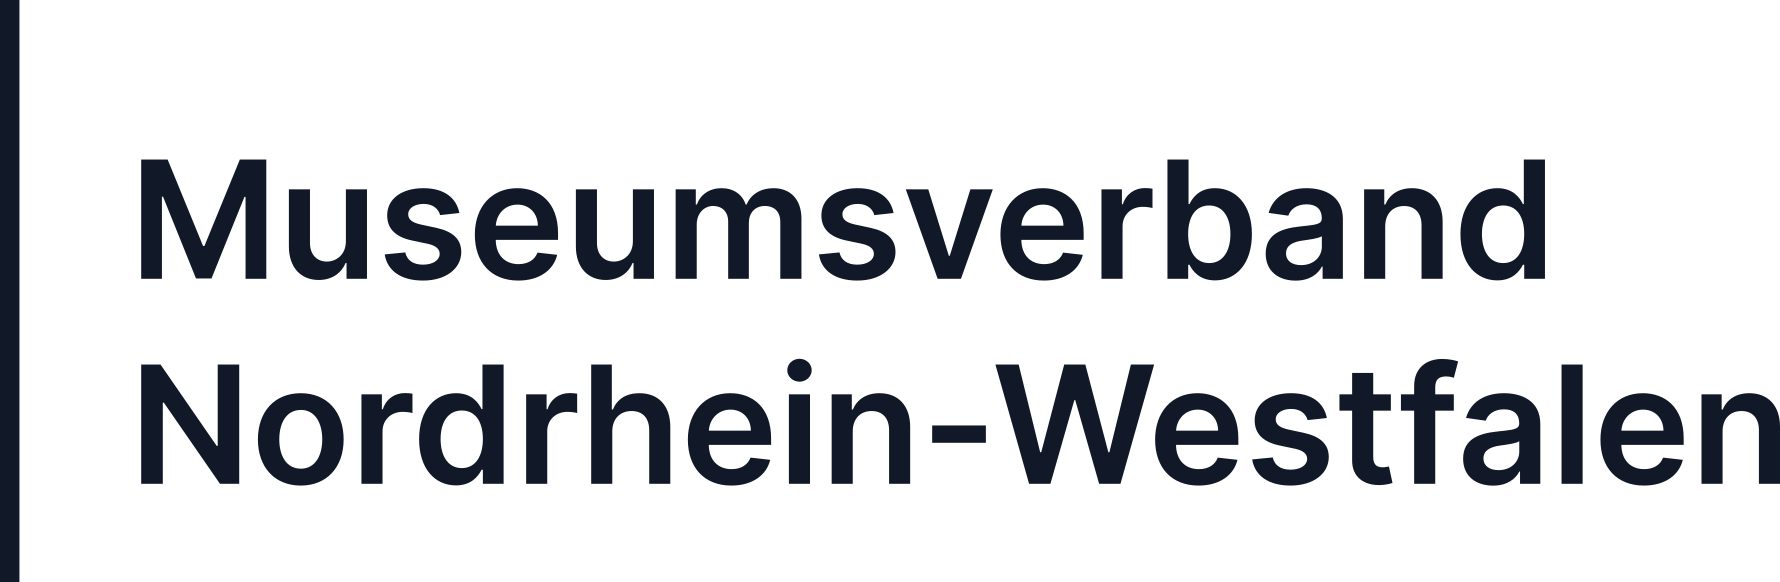 Museumsverband Nordrhein-Westfalen e.V.